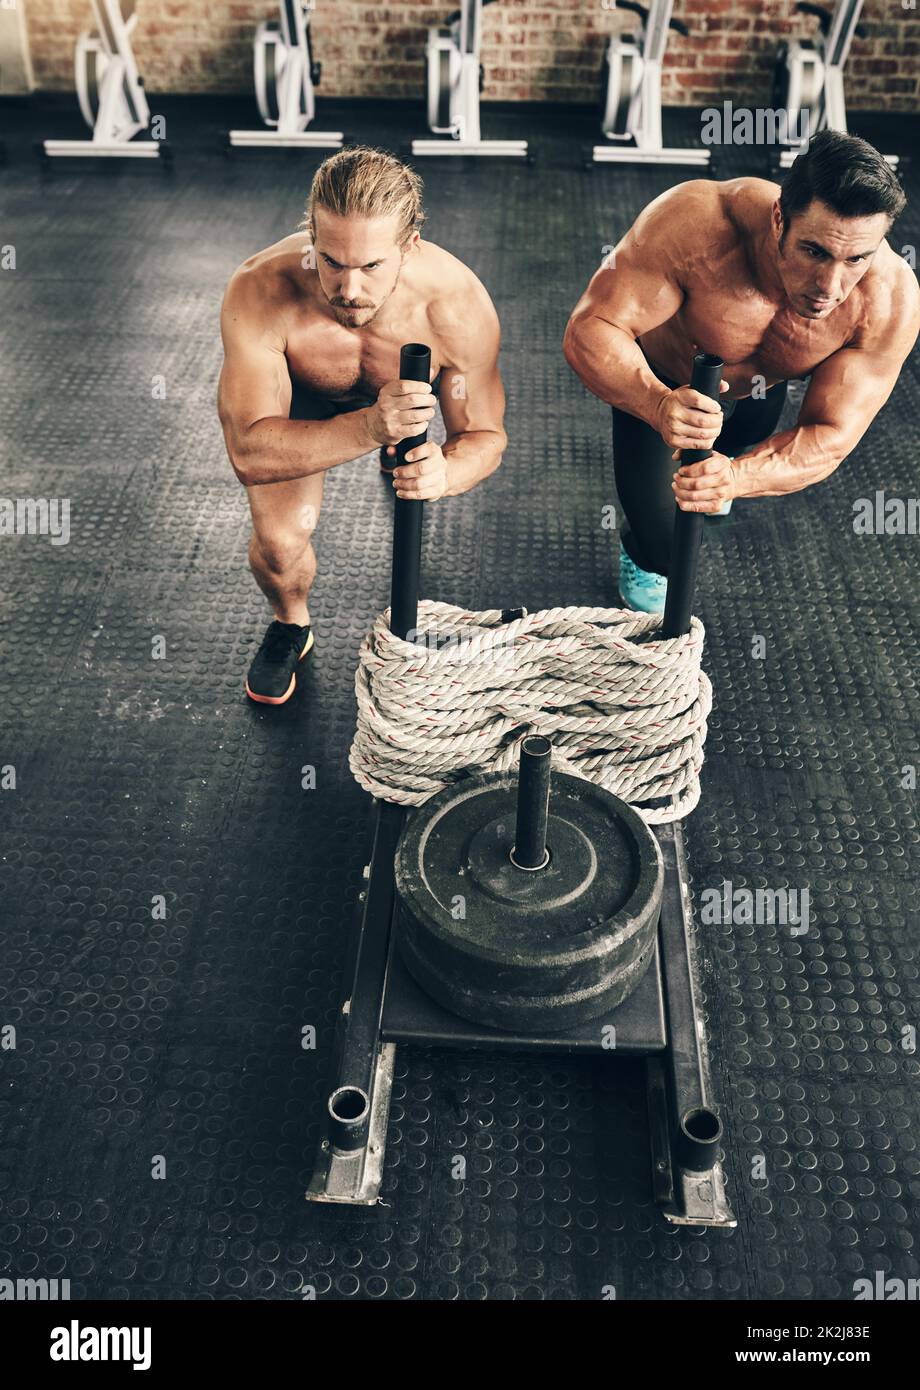 Zusammen ist das noch einfacher. Aufnahme von zwei fitten und entschlossenen jungen Männern, die Gewichte zum gemeinsamen Training in einem Fitnessstudio nutzen. Stockfoto